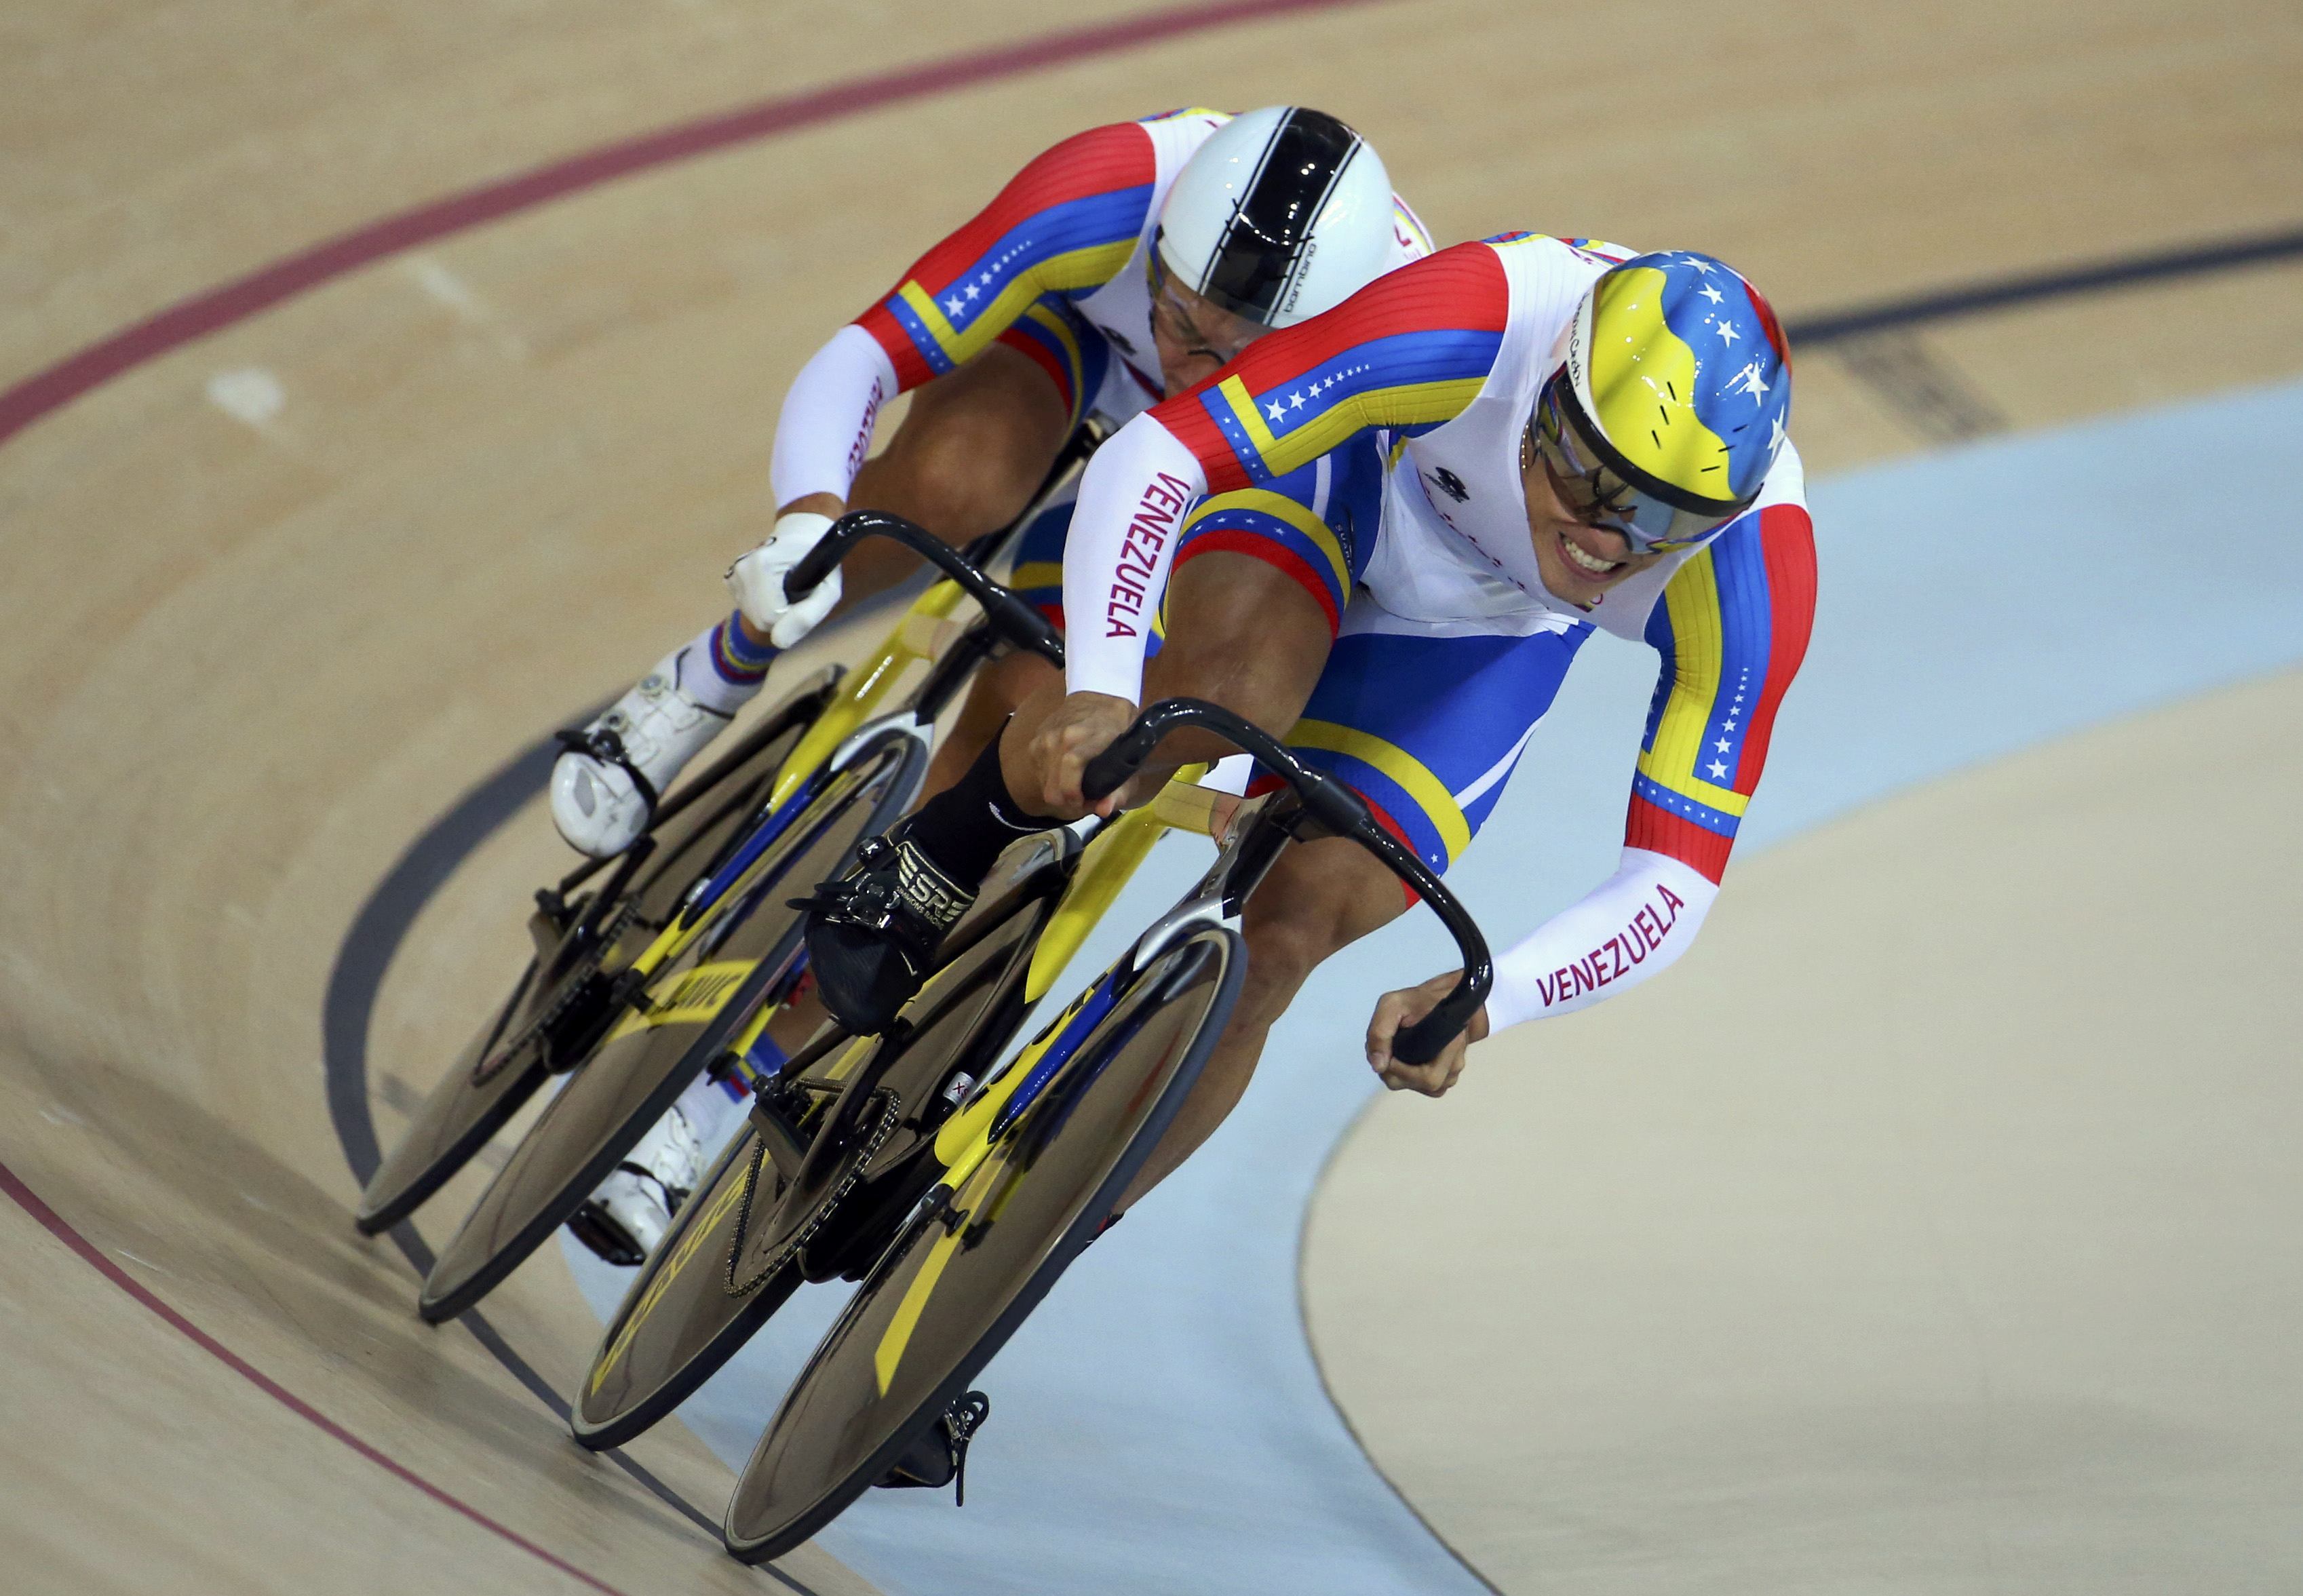 Equipo de velocidad masculino ganó diploma olímpico en ciclismo de pista